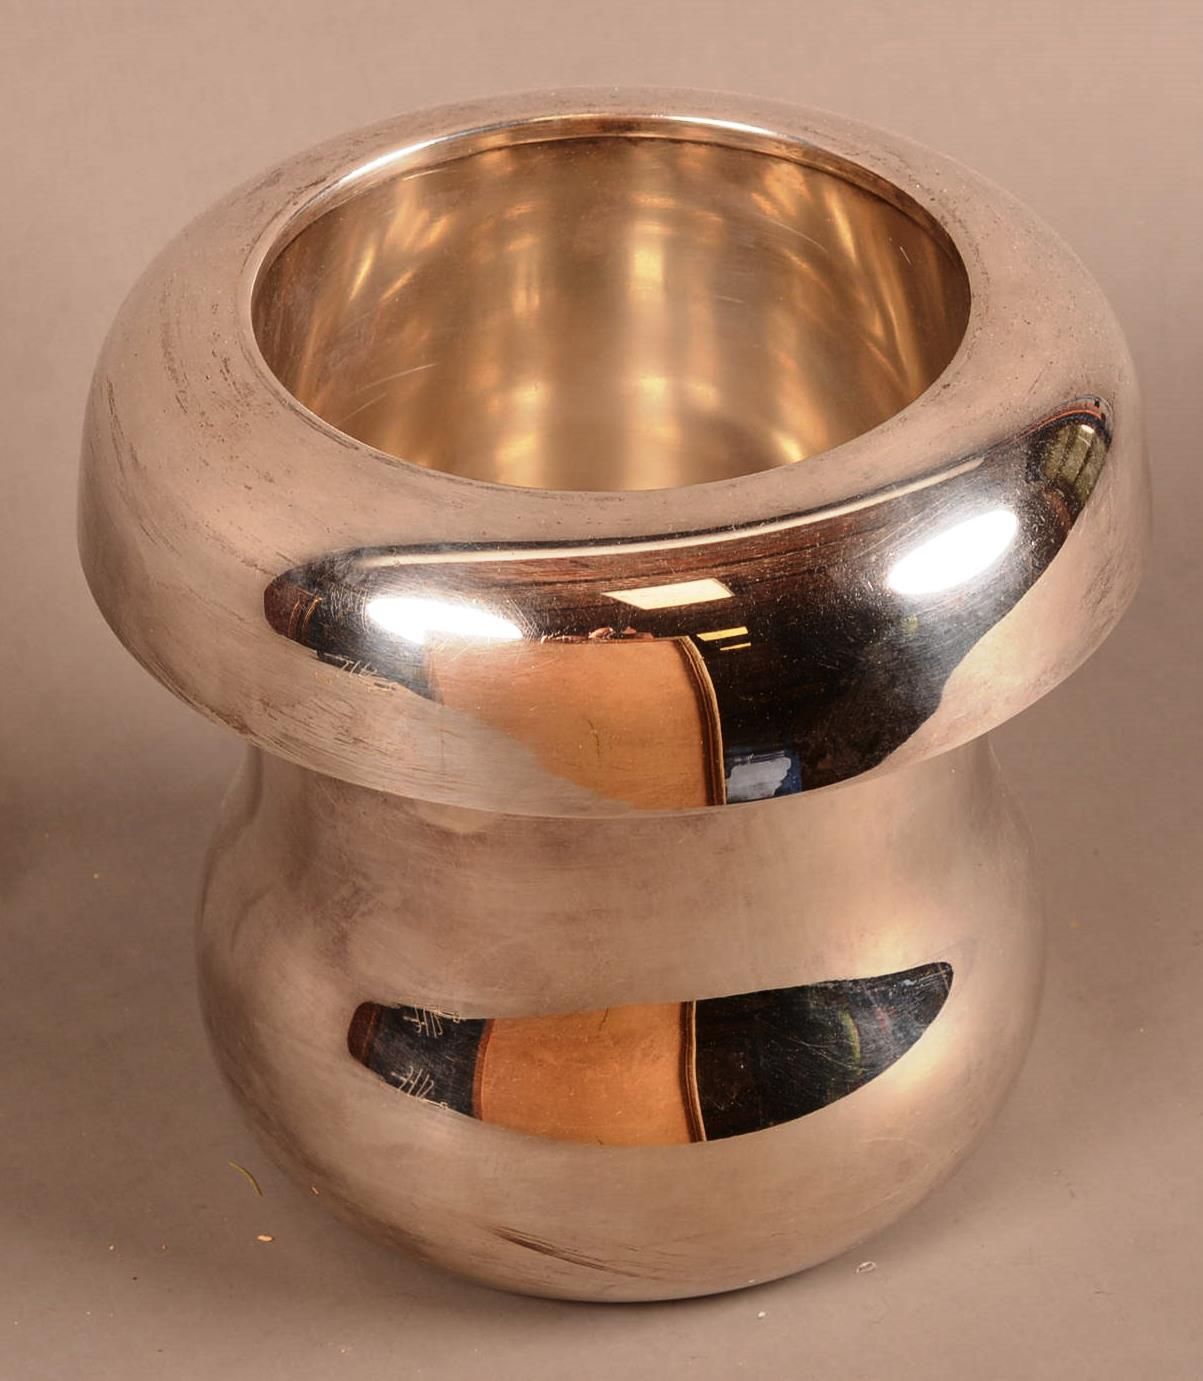 Seau à glaces en métal argenté Ice bucket in silver plated metal in the shape of&hellip;